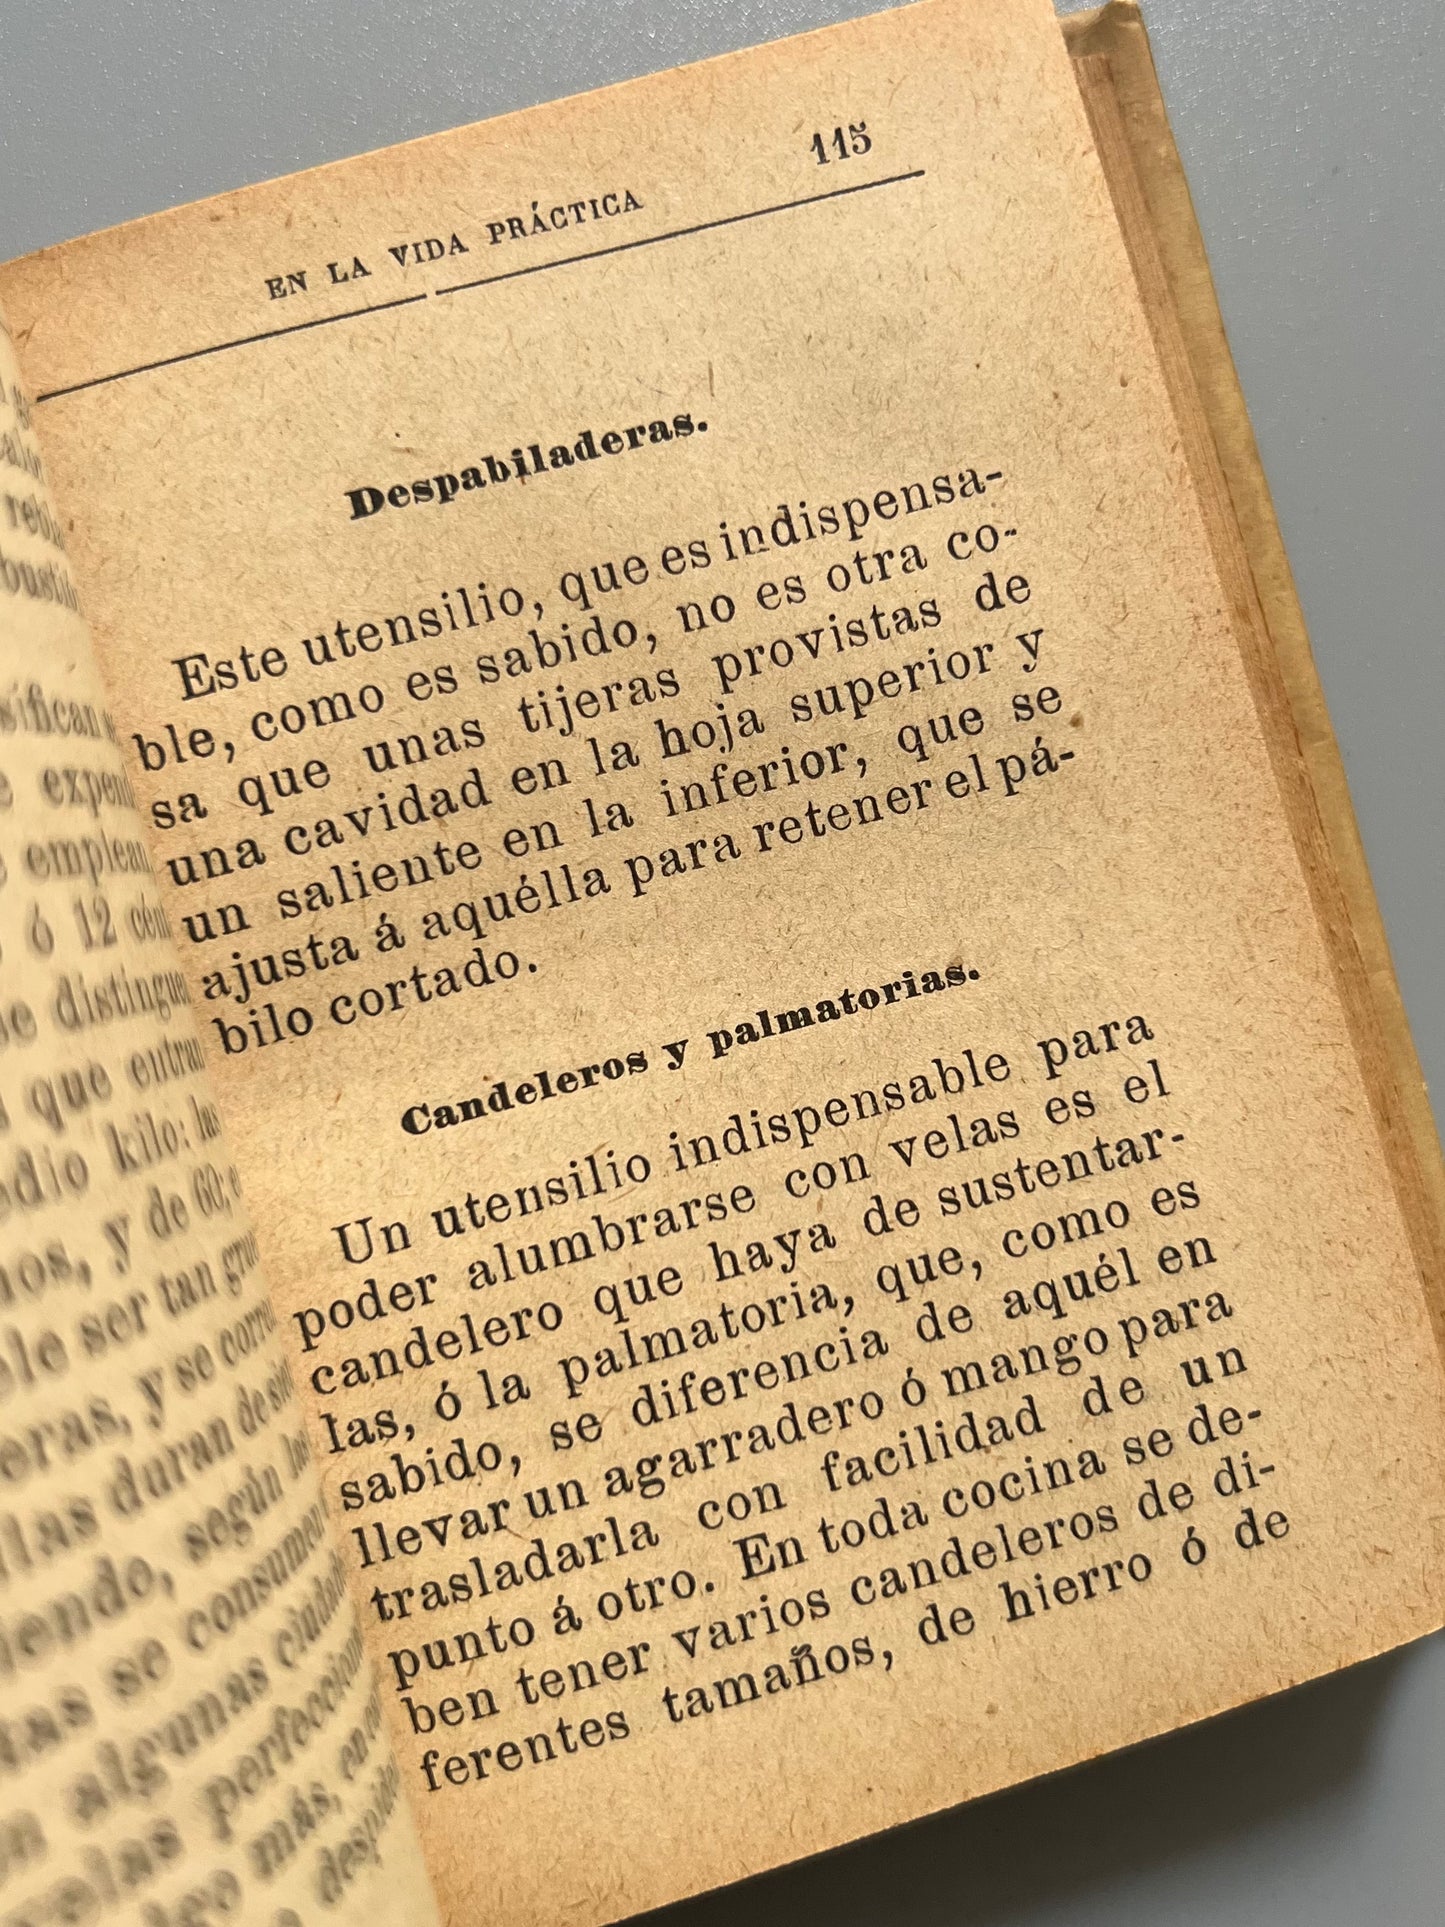 La higiene y la economía en la vida práctica. Guía del ama de casa - Saturnino Calleja, ca. 1915